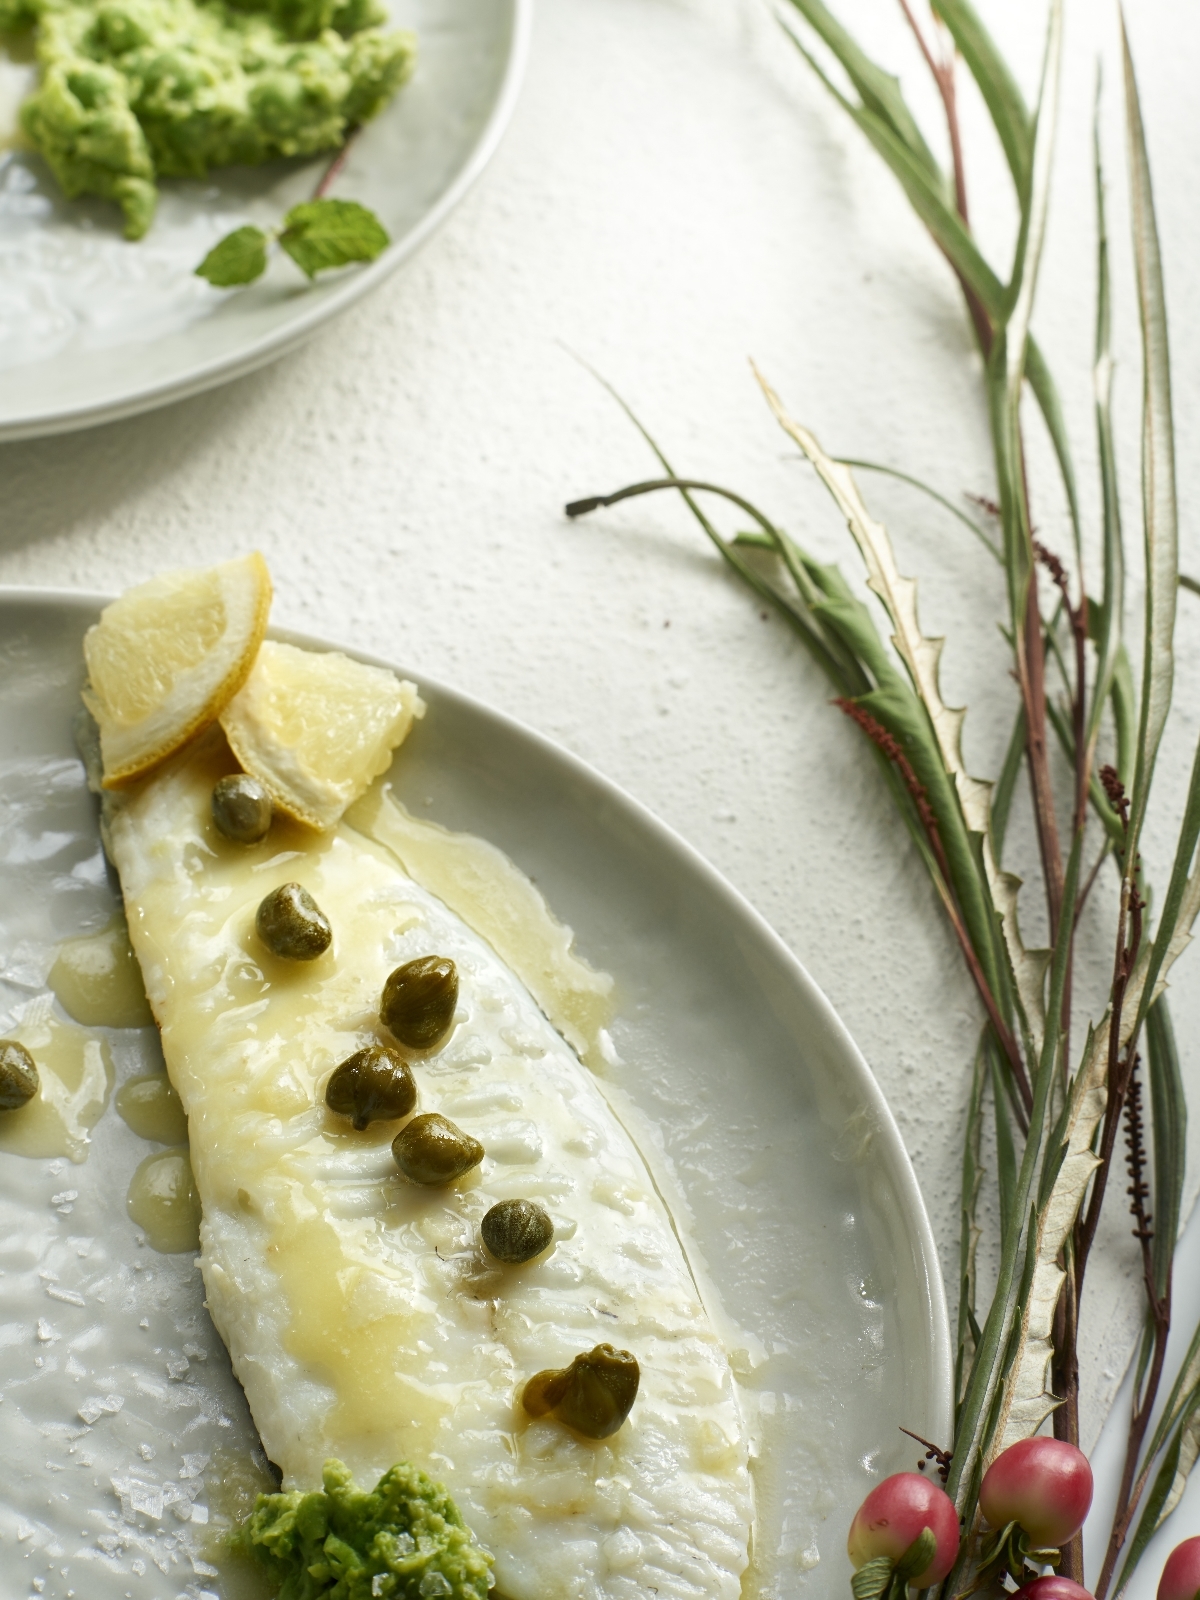 Para acabar el día y como cena, los expertos en nutrición recomiendan pescado blanco y en raciones moderadas.